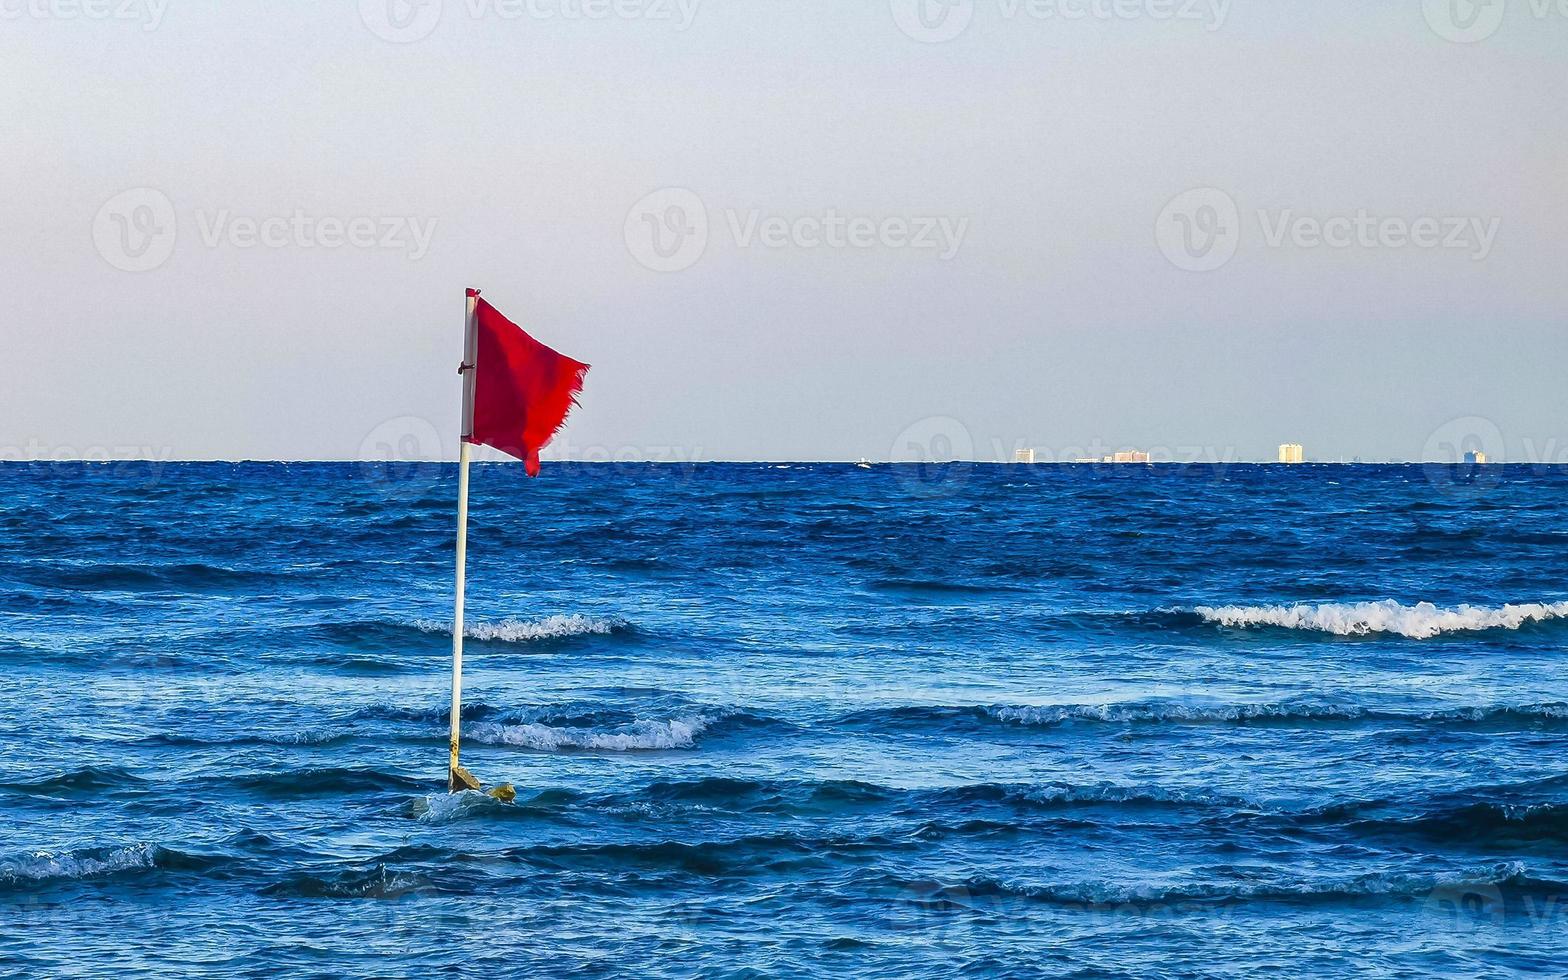 bandeira vermelha natação proibida ondas altas playa del carmen méxico. foto